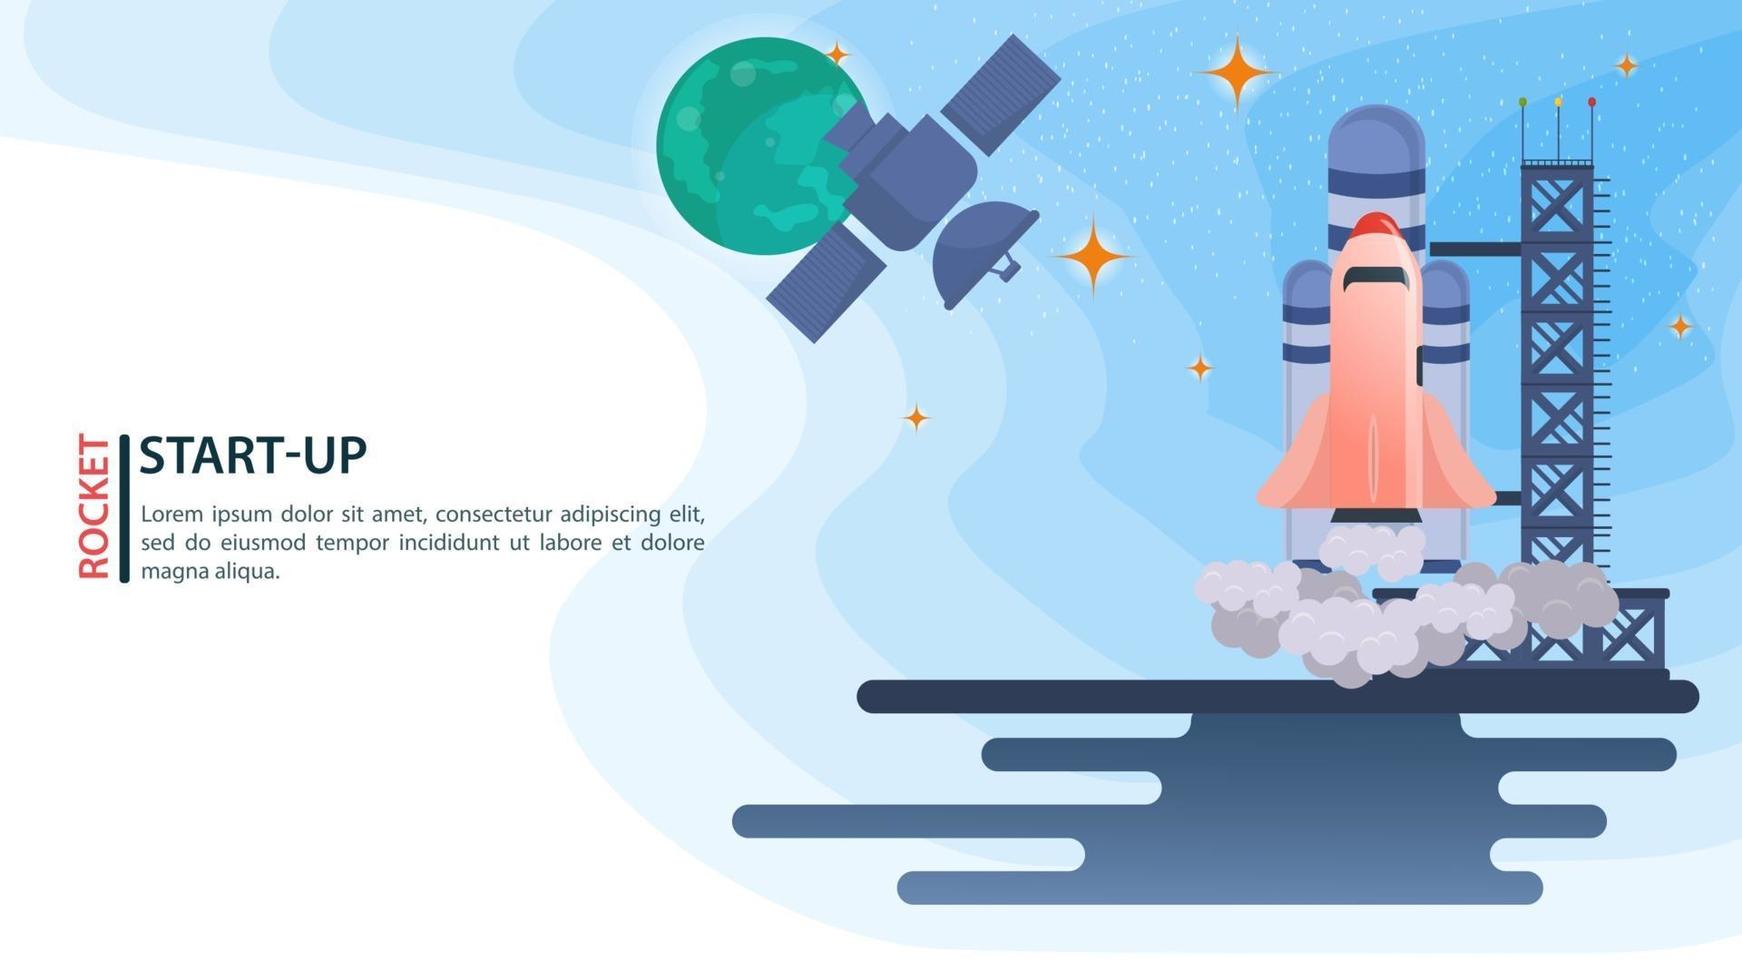 banner satellitare nello spazio sullo sfondo di pianeti che guardano il lancio del razzo dello space shuttle startup per siti web e mobili design piatto illustrazione vettoriale